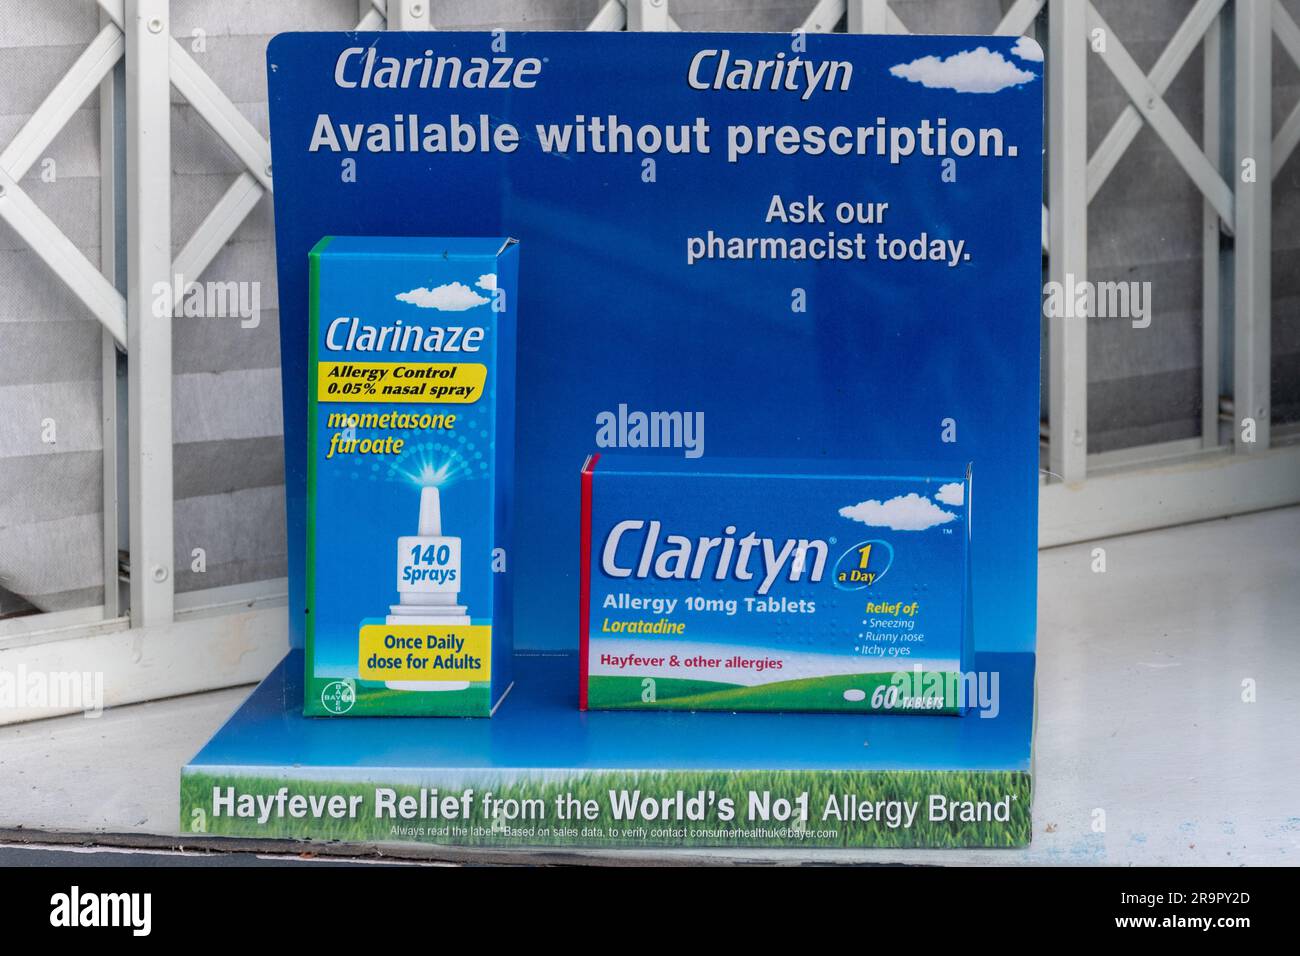 Clarinaze et clarityn traitement ou médicament contre l'allergie et la fièvre de l'hayfièvre, exposés dans une vitrine de pharmacie chimistes, Angleterre, Royaume-Uni Banque D'Images